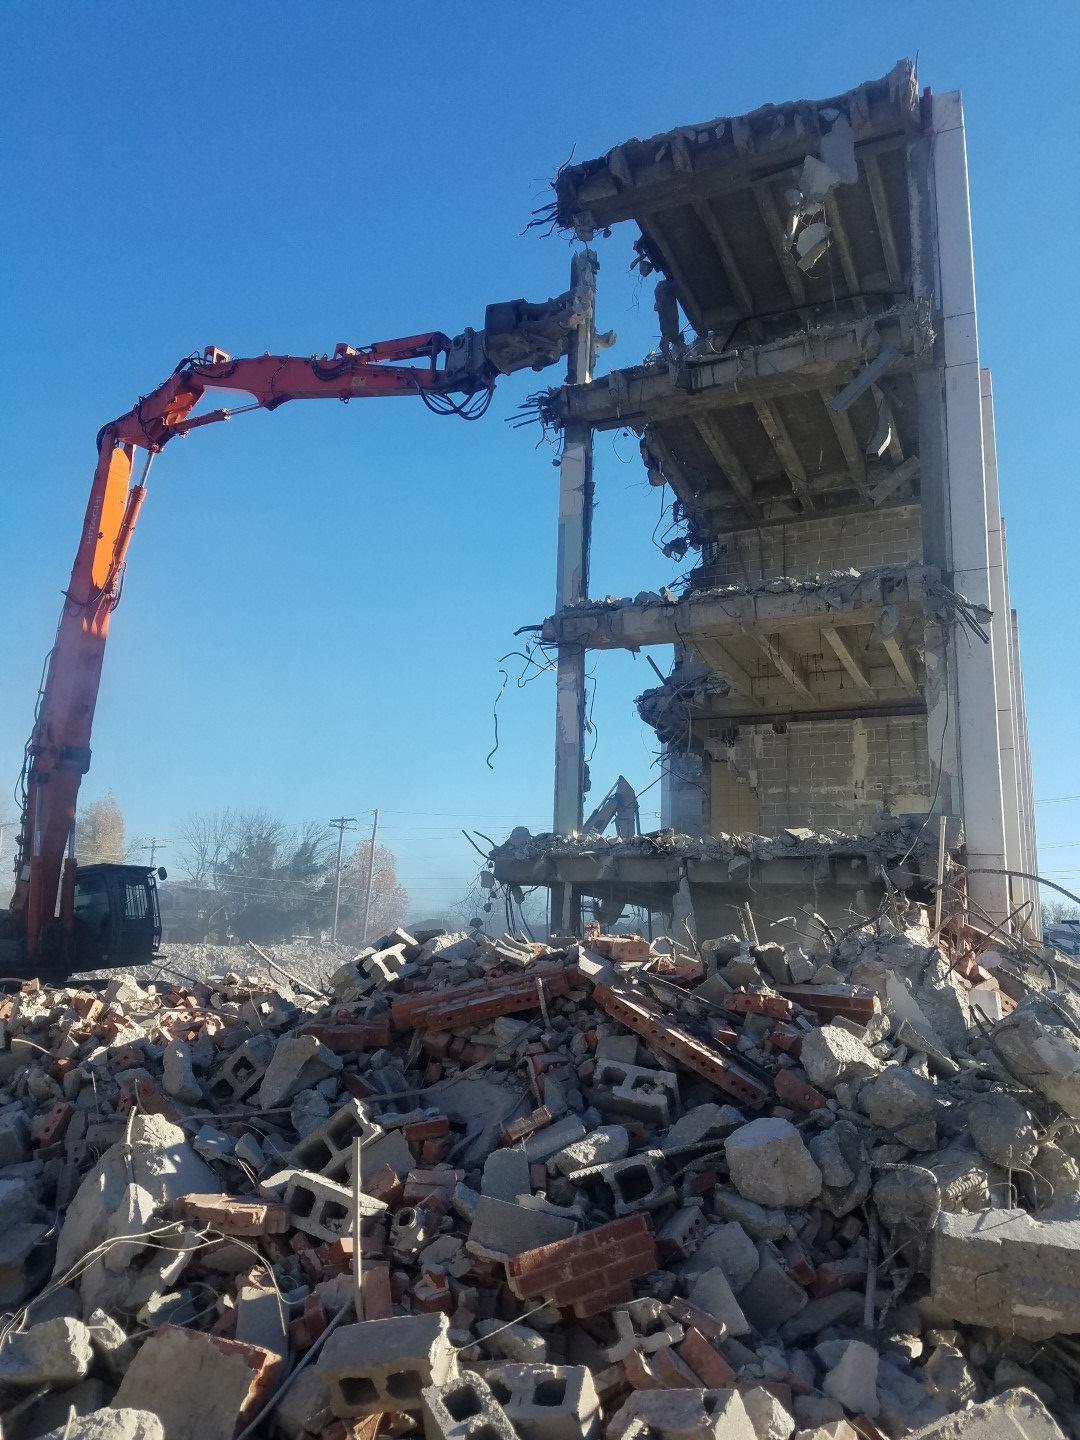 High Reach Demolition - Earth Services, Benton, Illinois